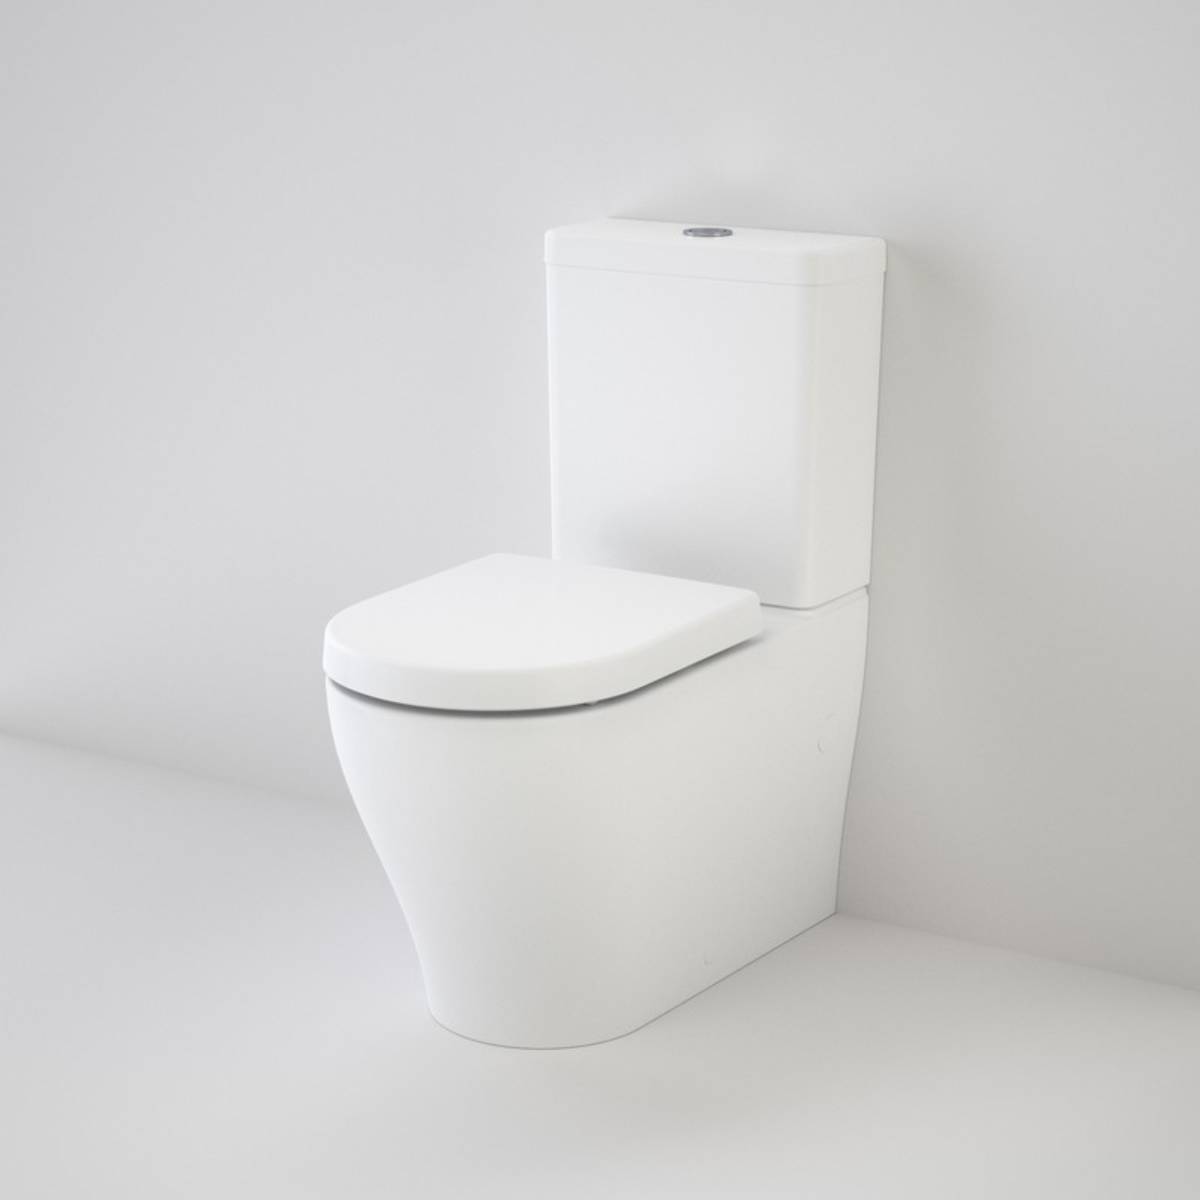 https://www.sinkandbathroomshop.com.au/shop/toilets/back-to-wall-toilet-suites/alix-rimless-btw-toilet-suite/